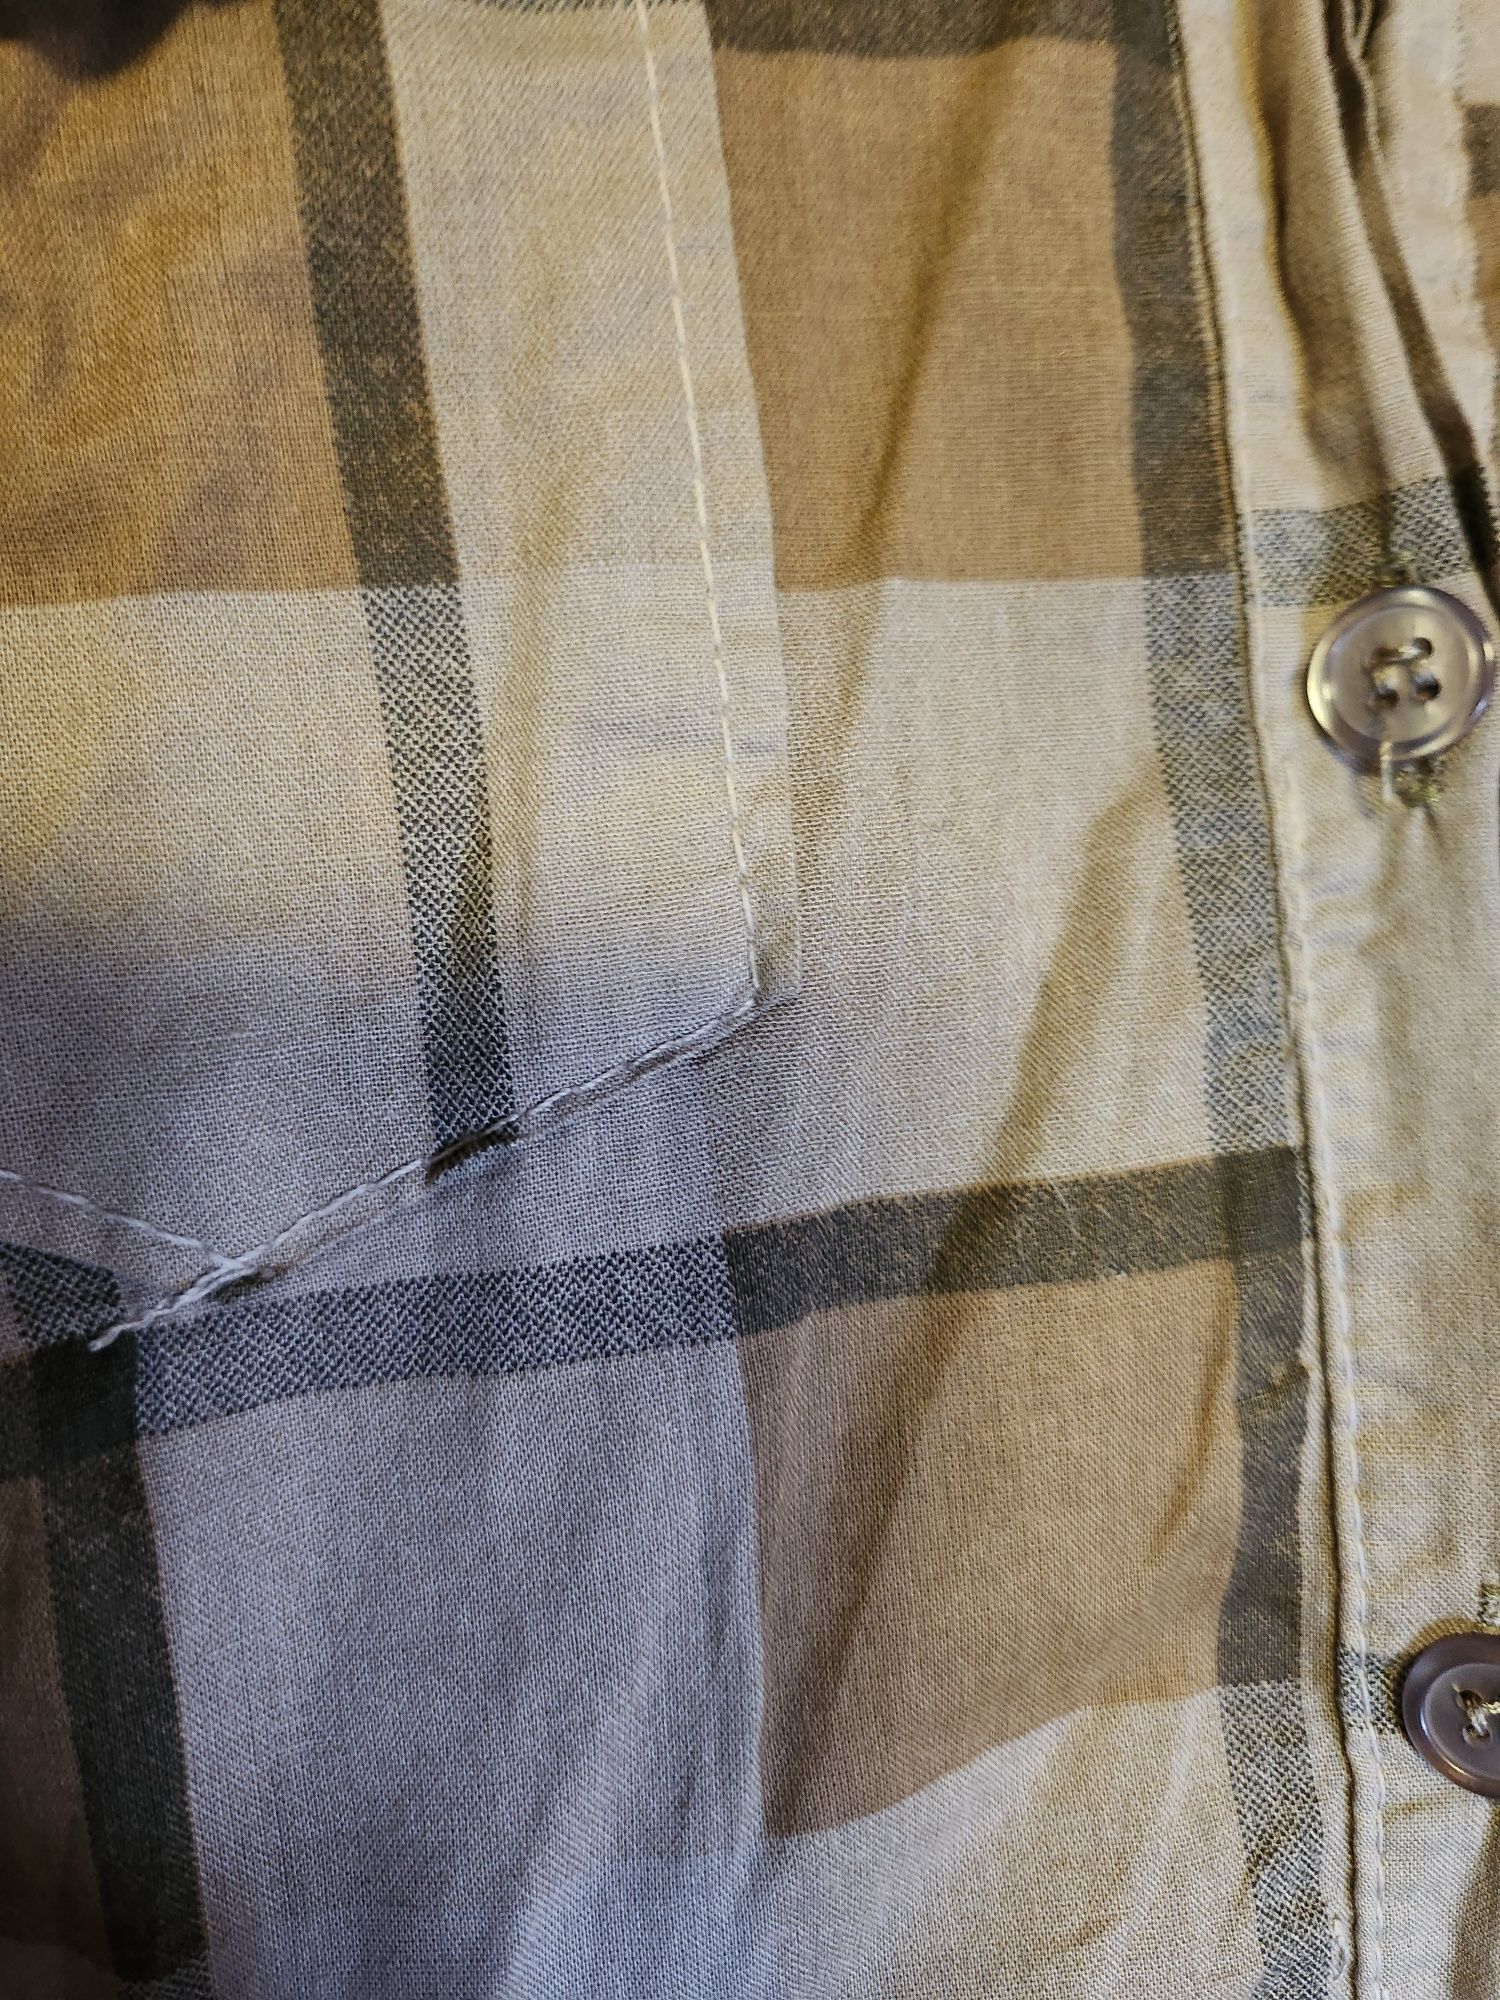 Koszula country kowbojska kratka brązowa wstawki zamsz rękawy XS